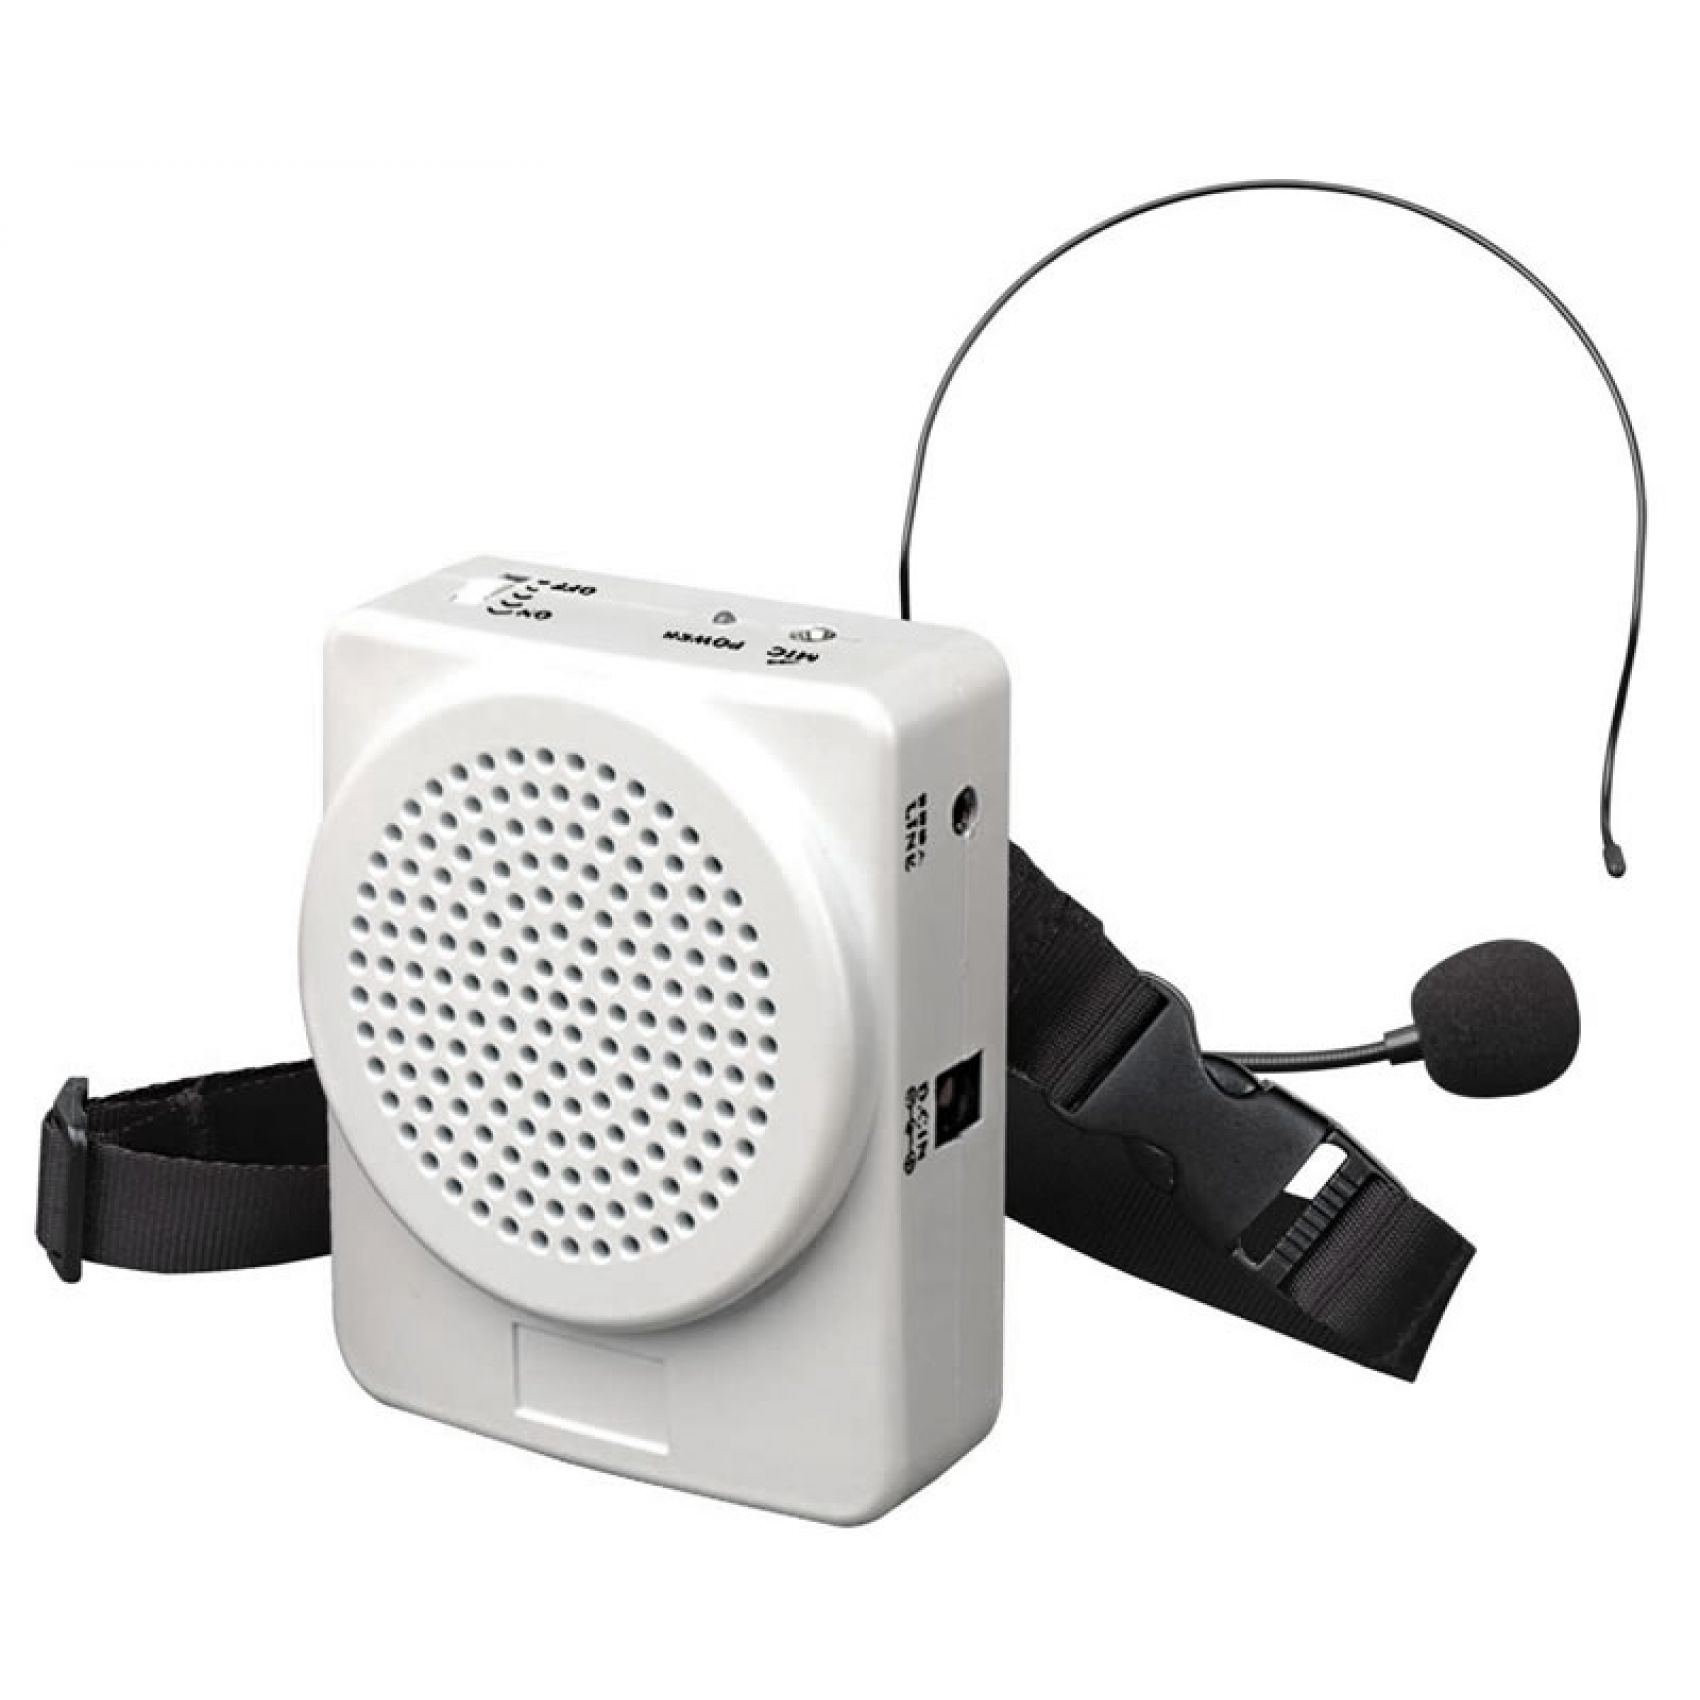 KARMA diffusore / cassa portatile amplificatore voce per animatori, guide turistiche, lezioni scolastiche